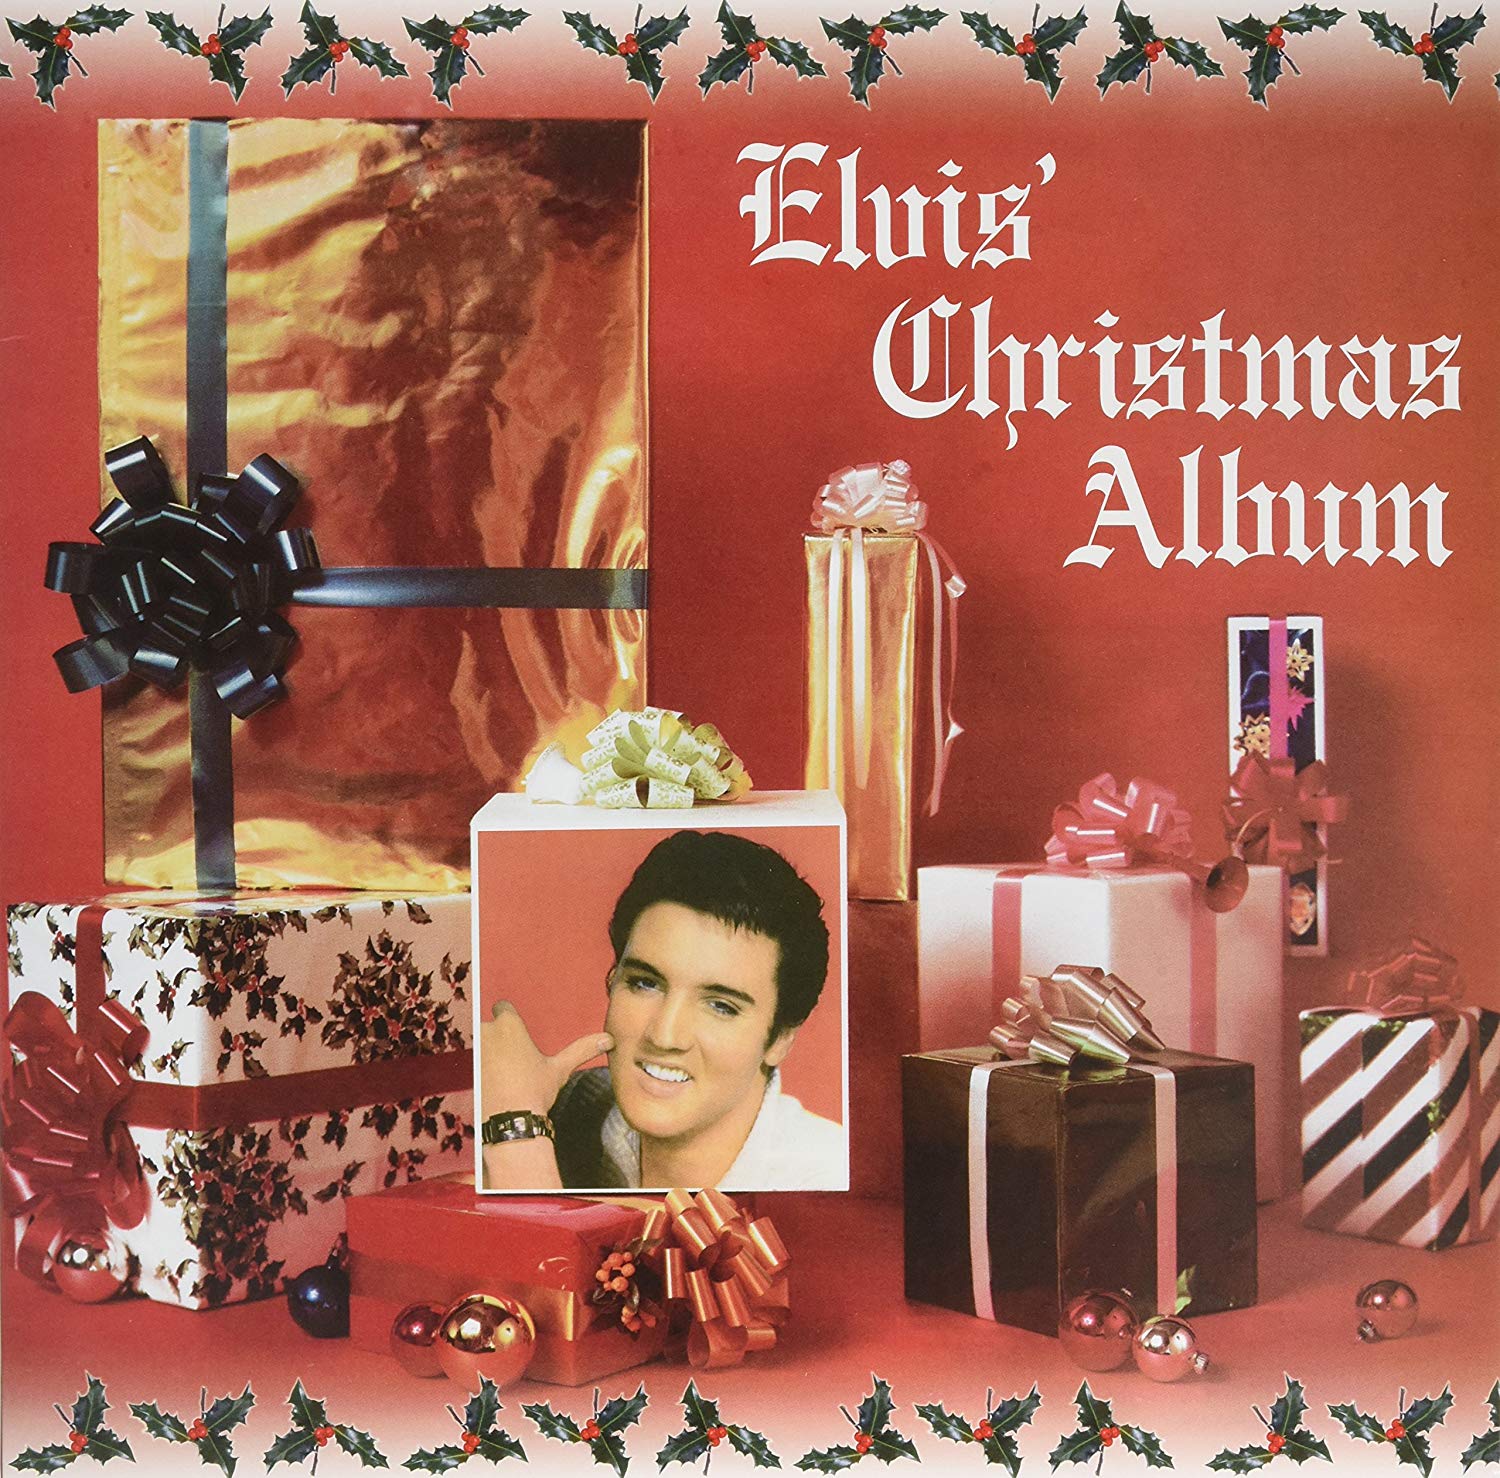 Elvis Presley - Elvis Christmas Album (180g) - LP